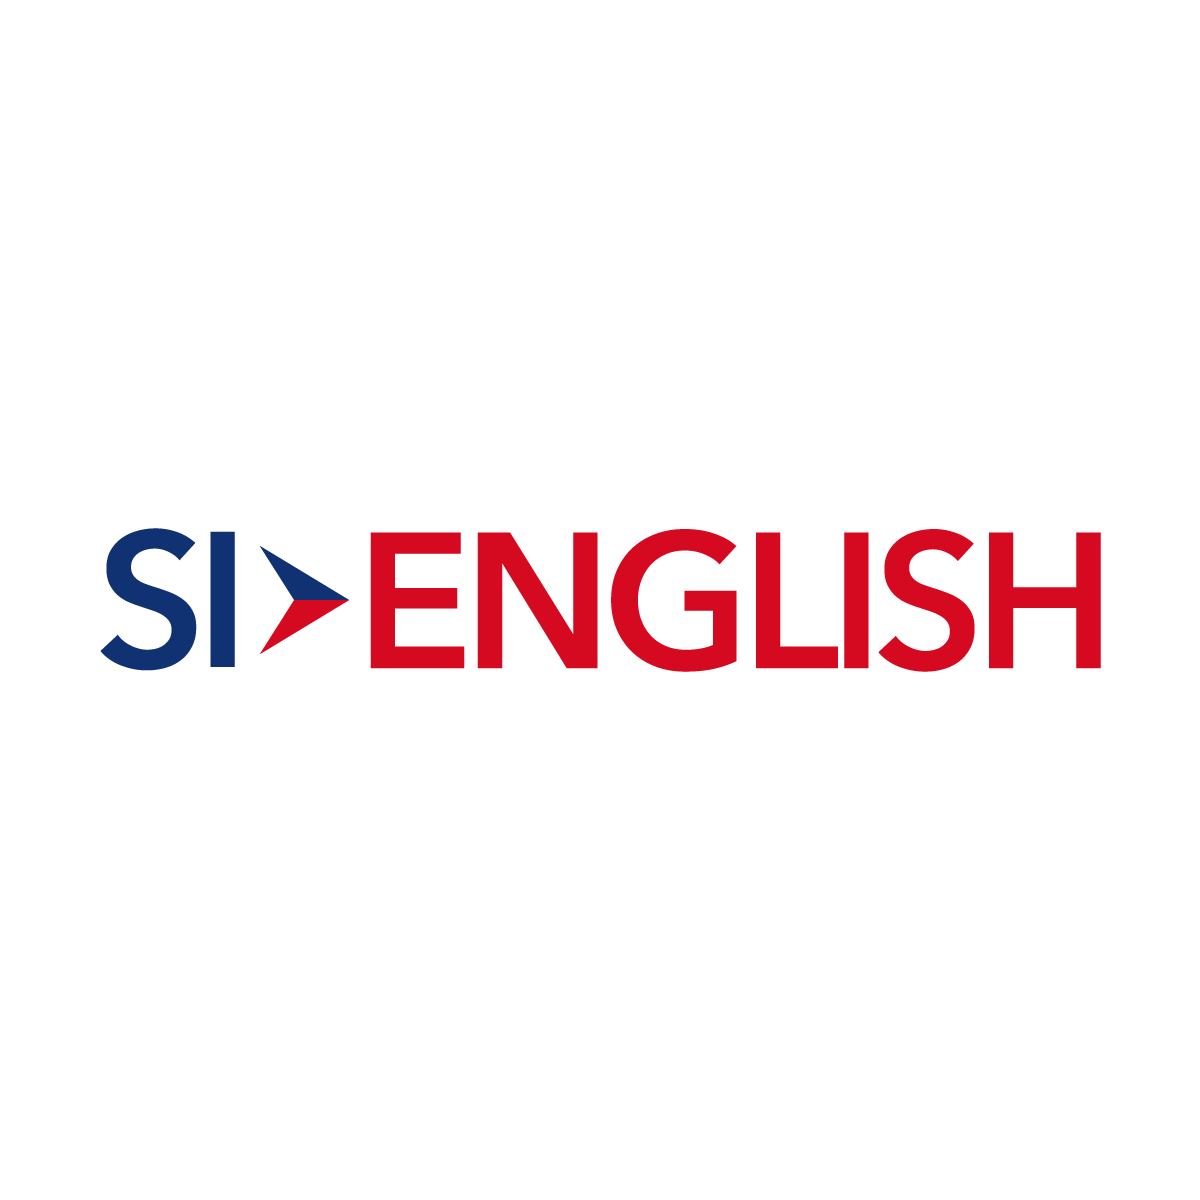 (c) Si-englishbkk.com